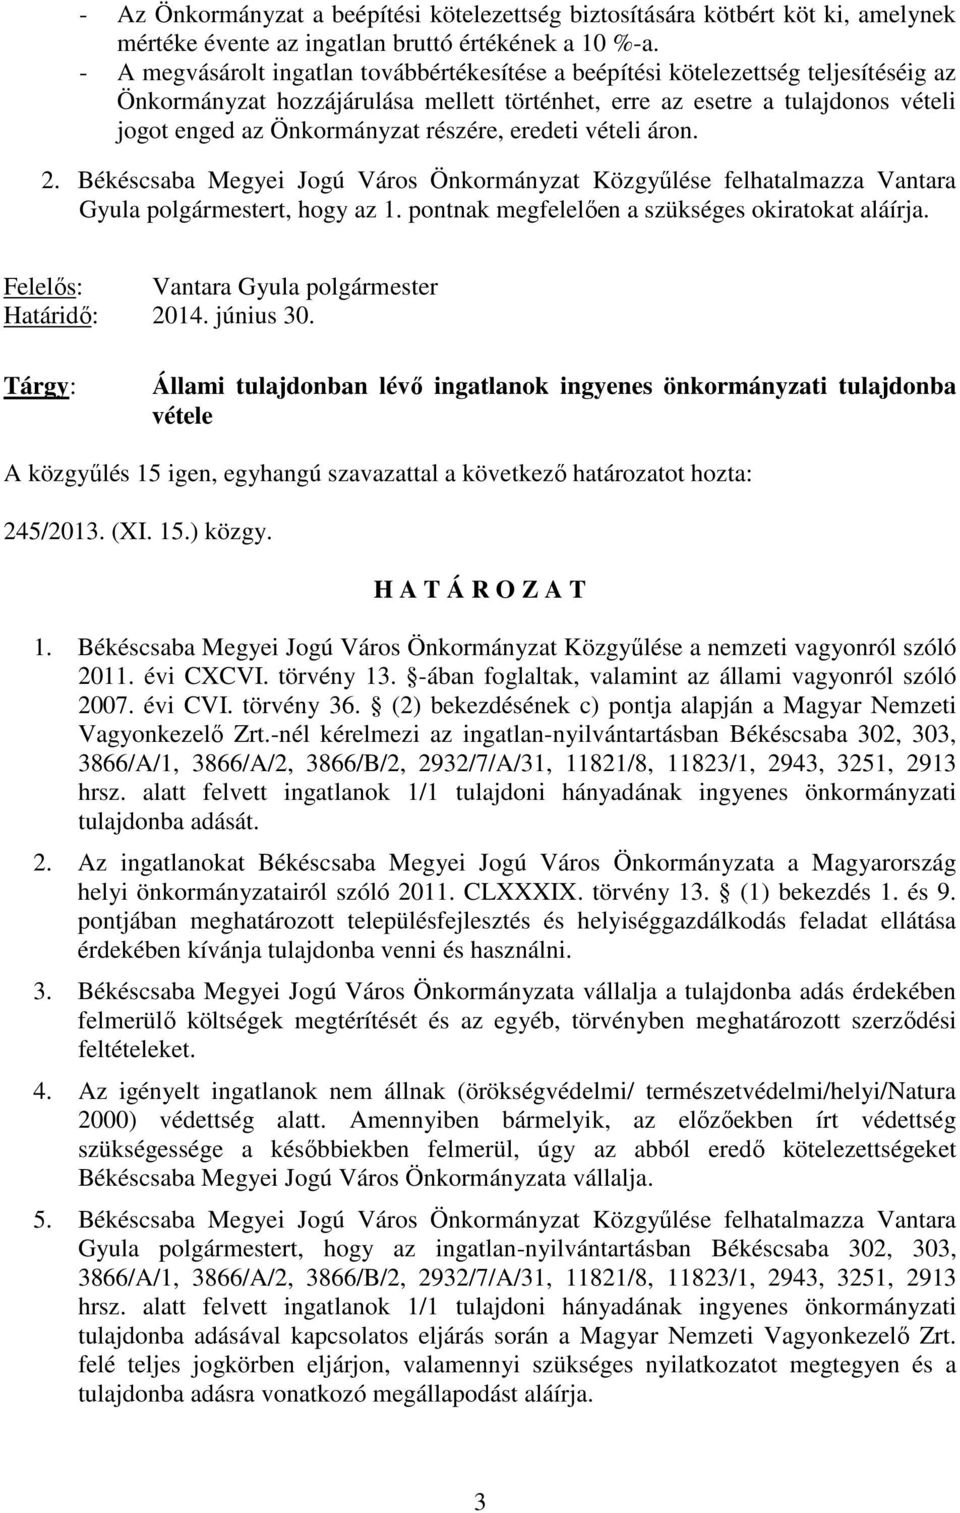 részére, eredeti vételi áron. 2. Békéscsaba Megyei Jogú Város Önkormányzat Közgyűlése felhatalmazza Vantara Gyula polgármestert, hogy az 1. pontnak megfelelően a szükséges okiratokat aláírja.